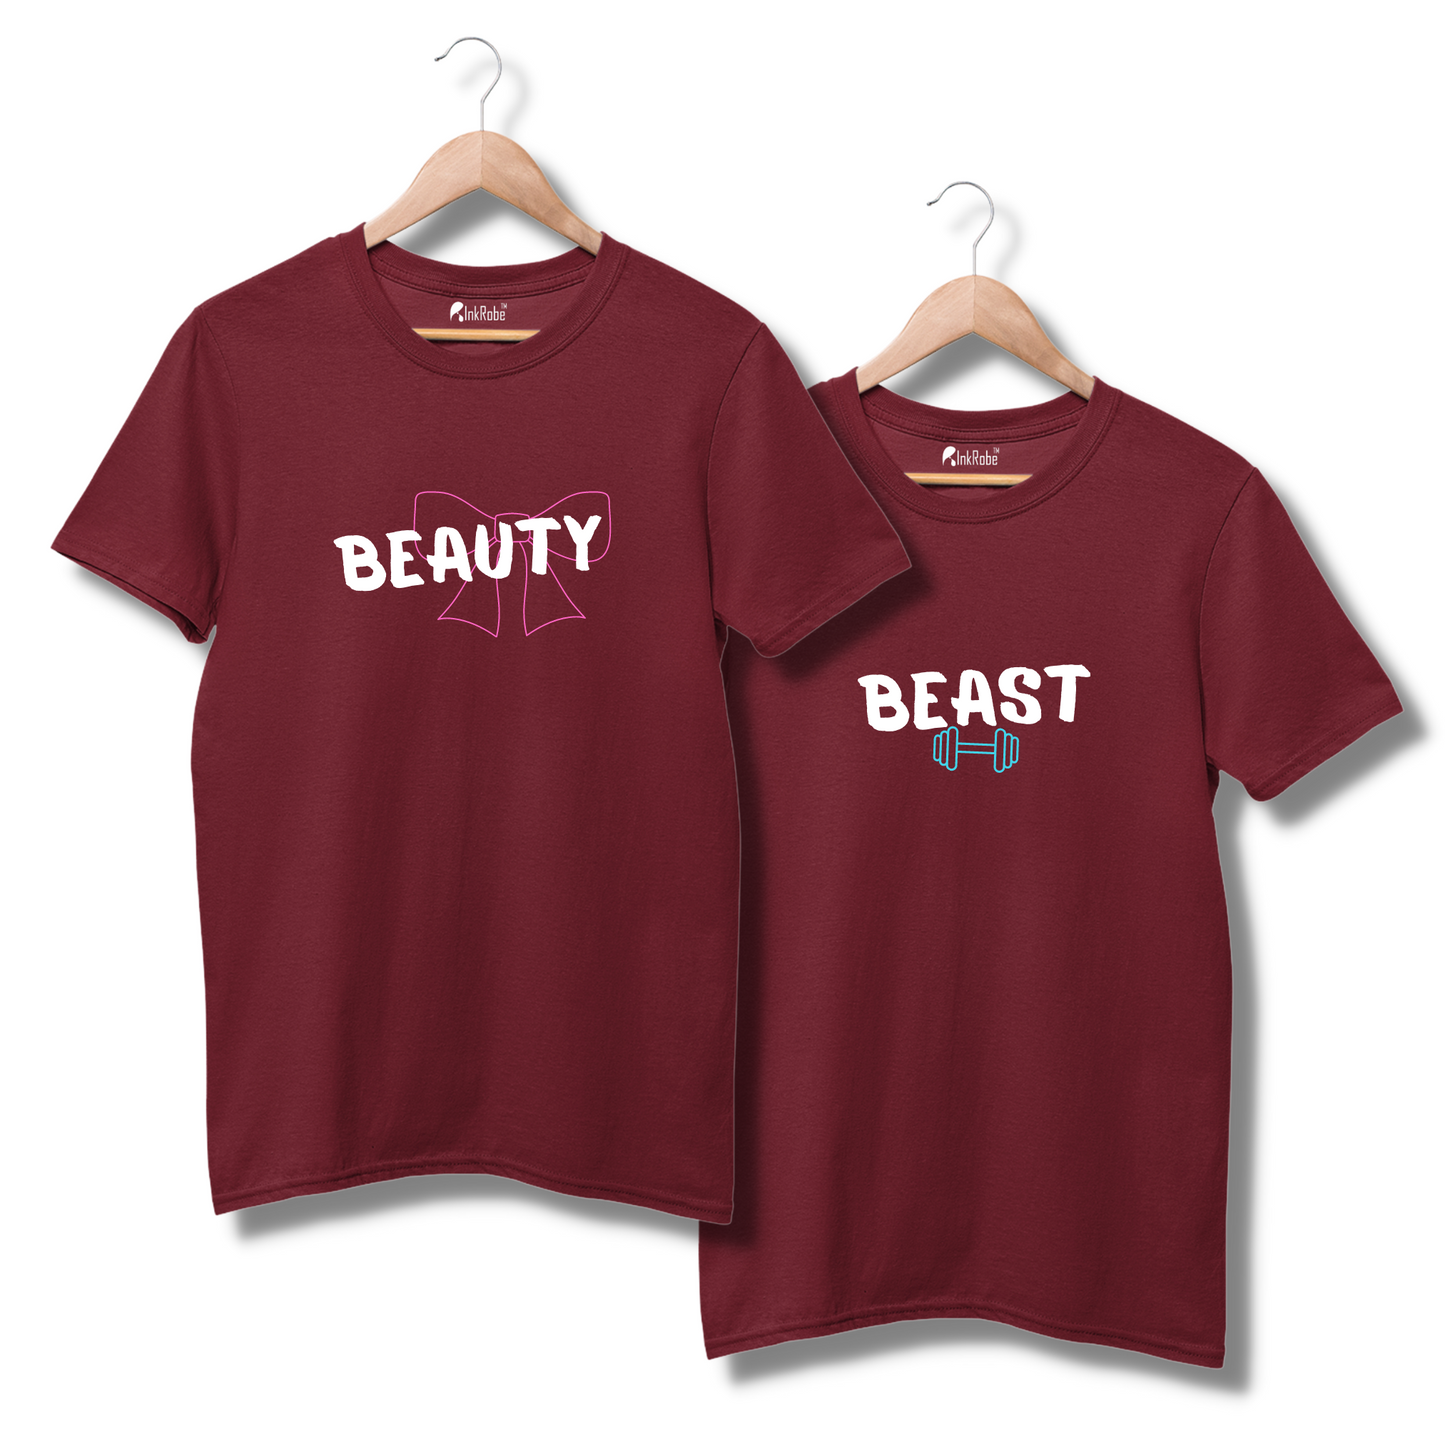 Beauty Beast Couple Tshirt